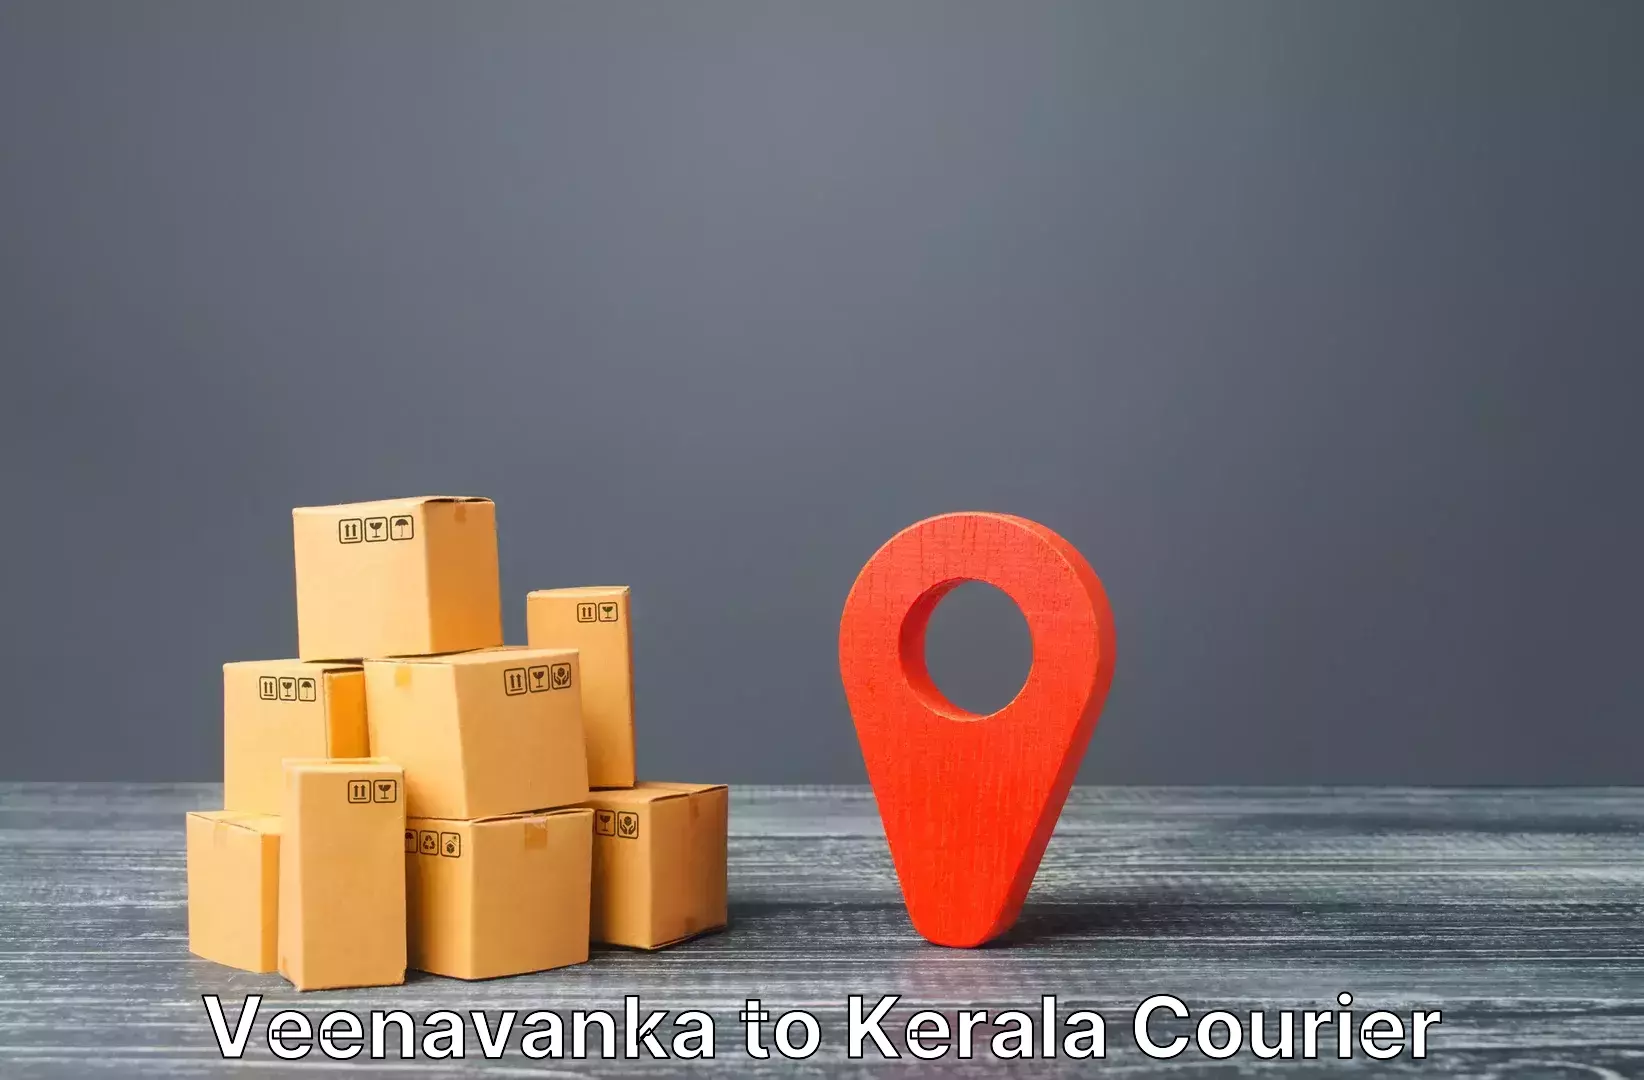 Electronic items luggage shipping Veenavanka to Kerala